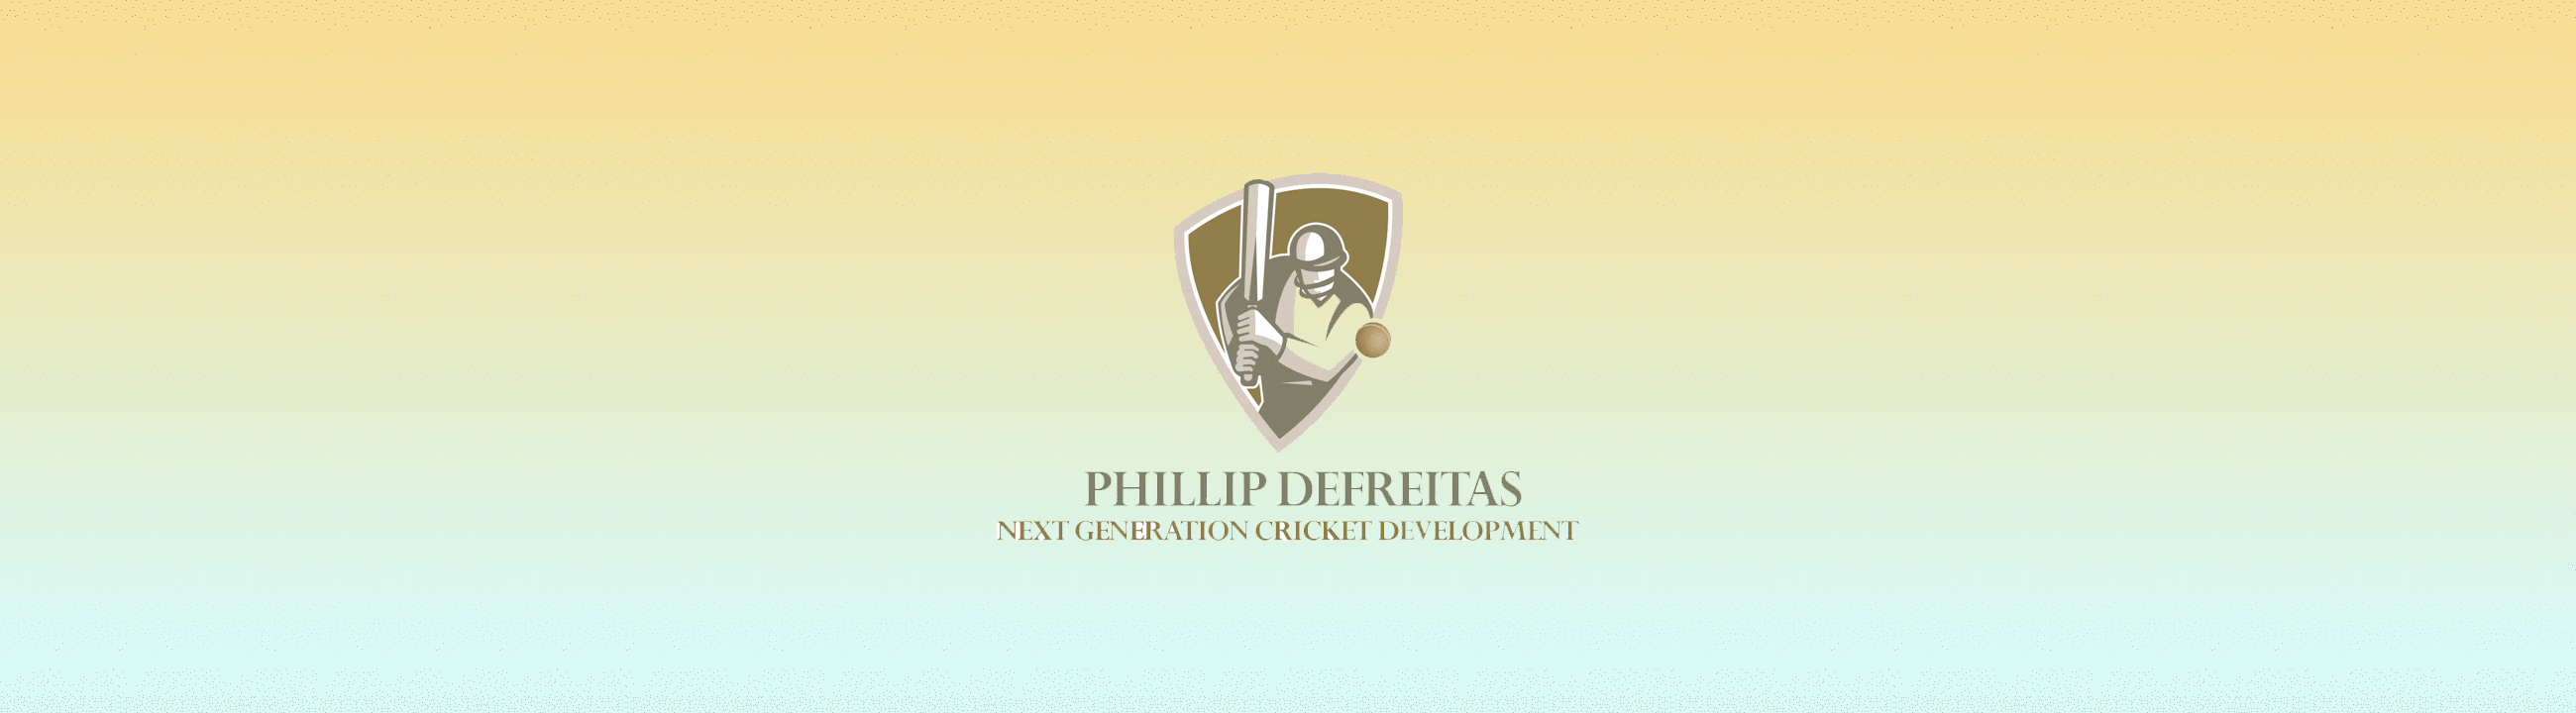 Phillip DeFreitas Cricket Development